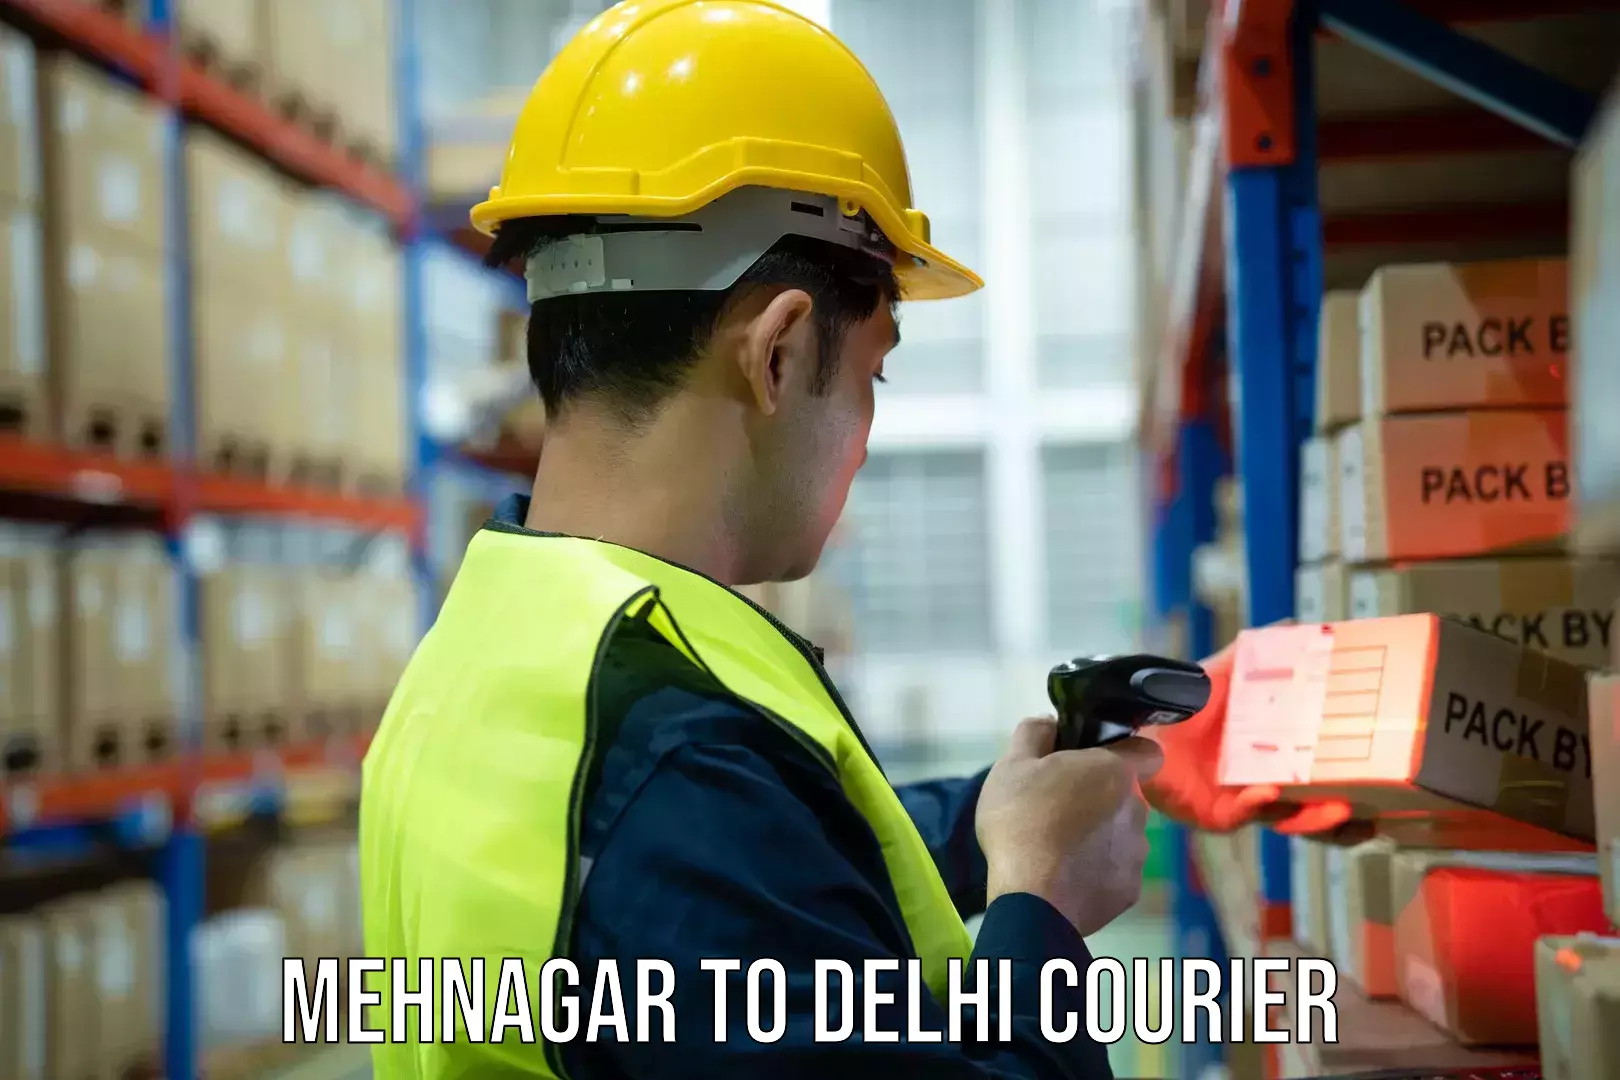 On-call courier service Mehnagar to Kalkaji